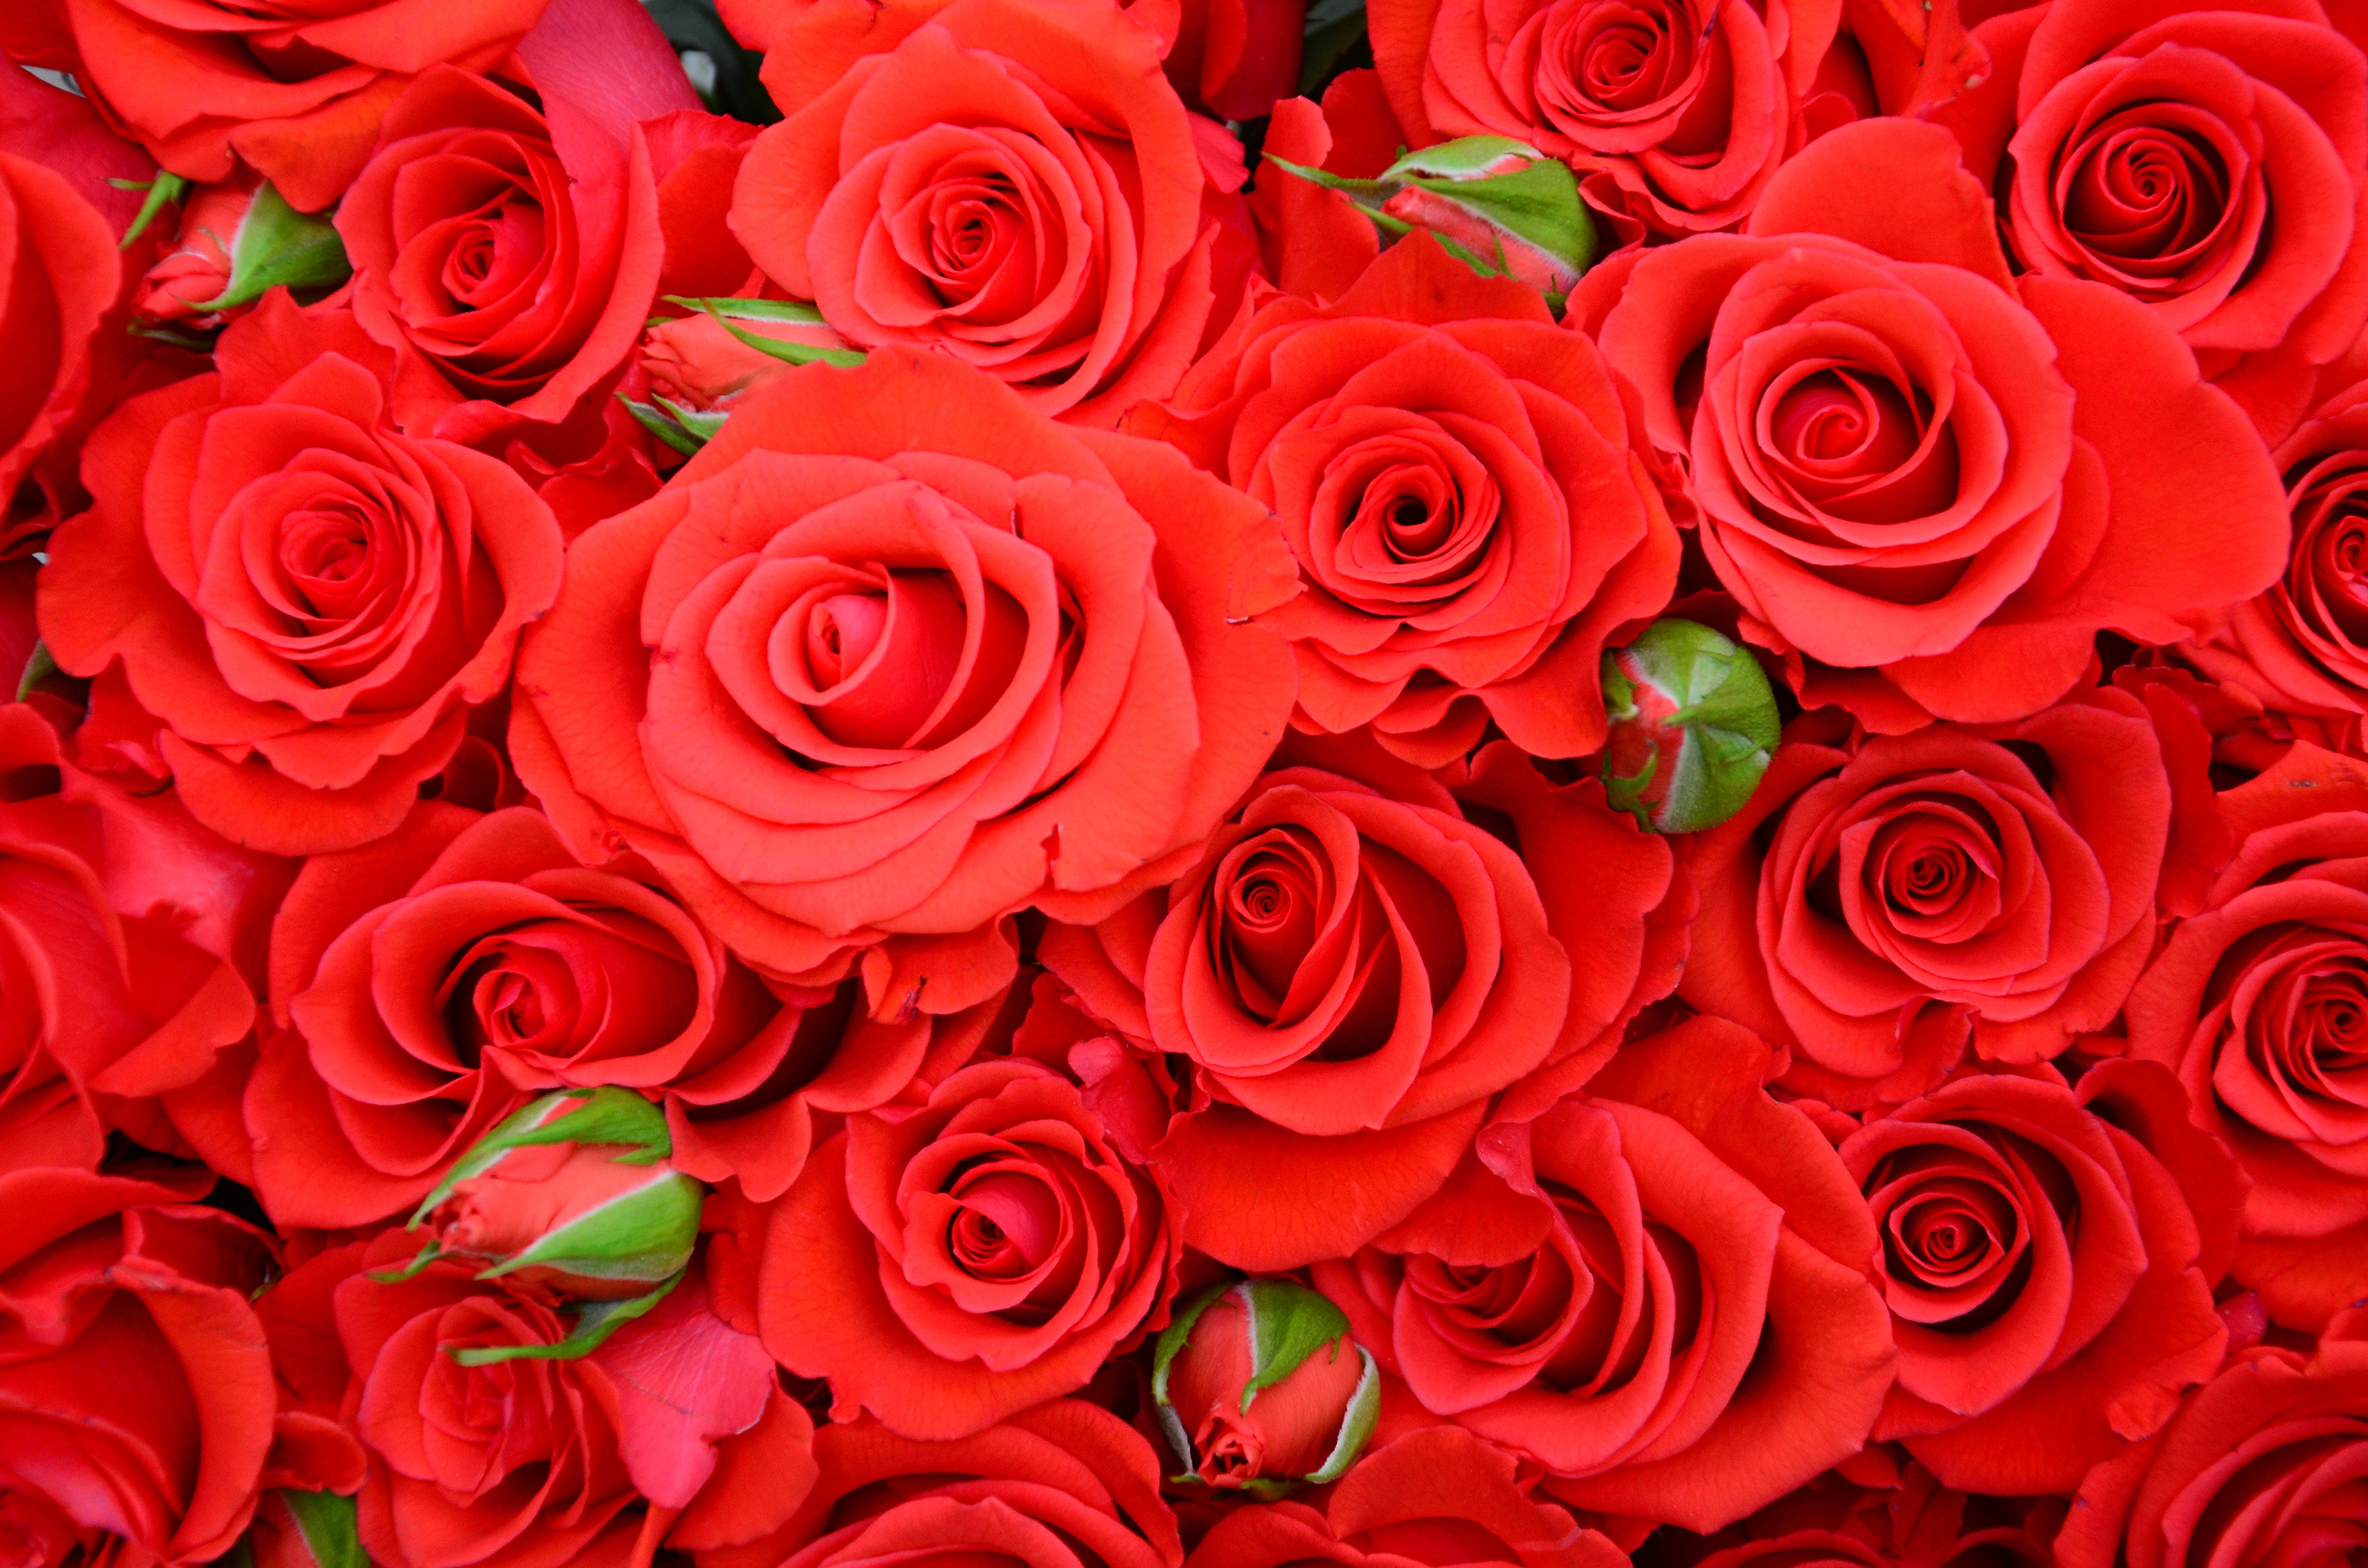 Rose wallpaper: Yêu thích hoa hồng không thể bỏ qua những bức hình nền hoa hồng sang trọng và đẳng cấp này. Những bông hoa hồng đỏ rực trên nền trắng tinh khôi sẽ mang đến cho bạn cảm giác thư giãn và yên bình.